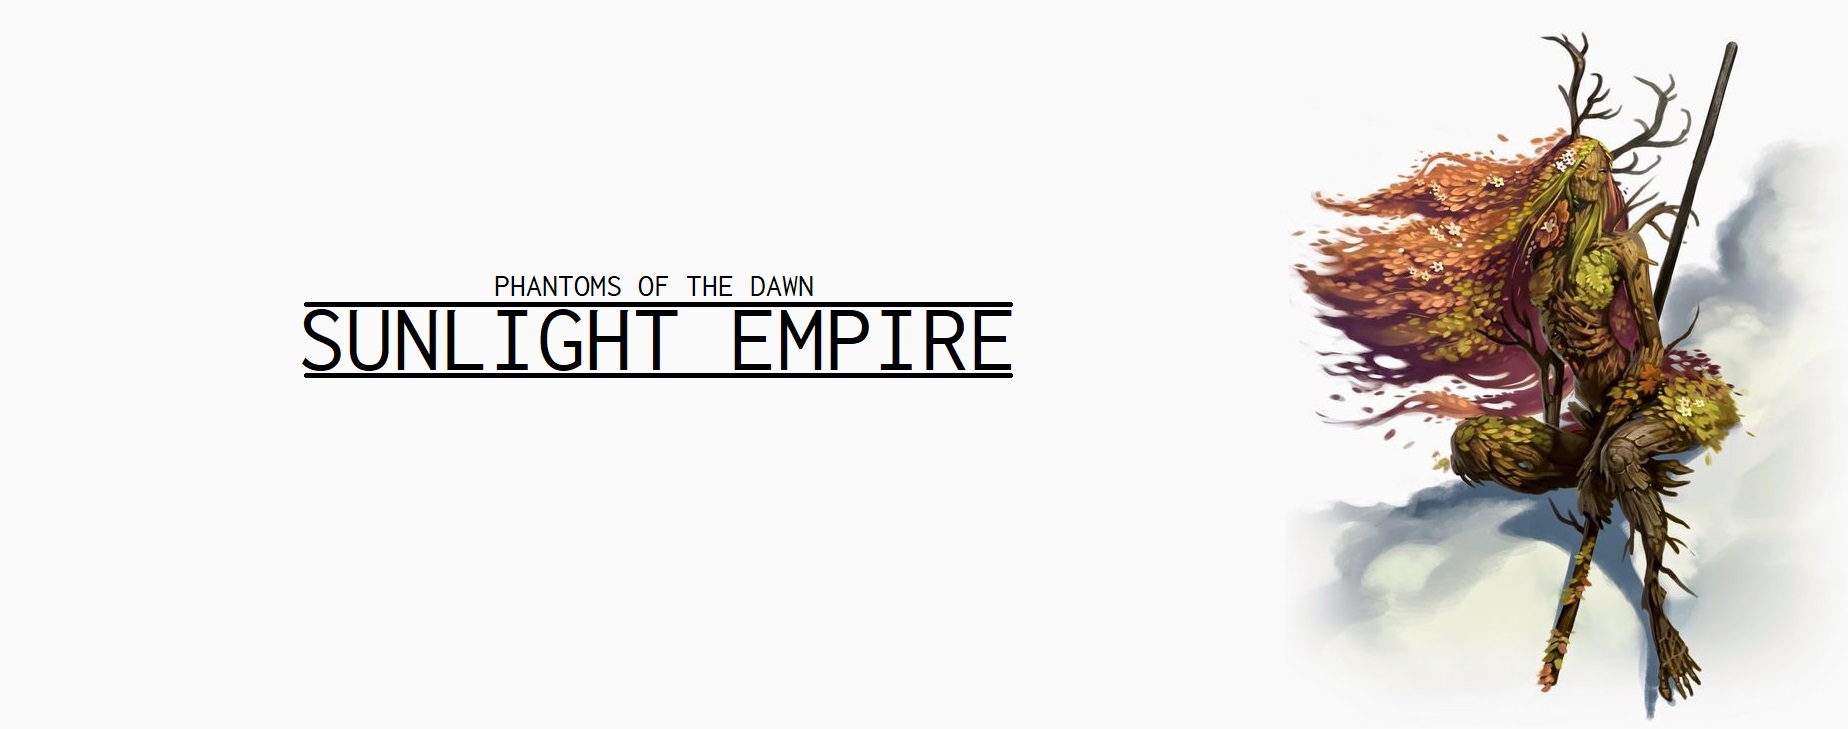 Sunlight Empire